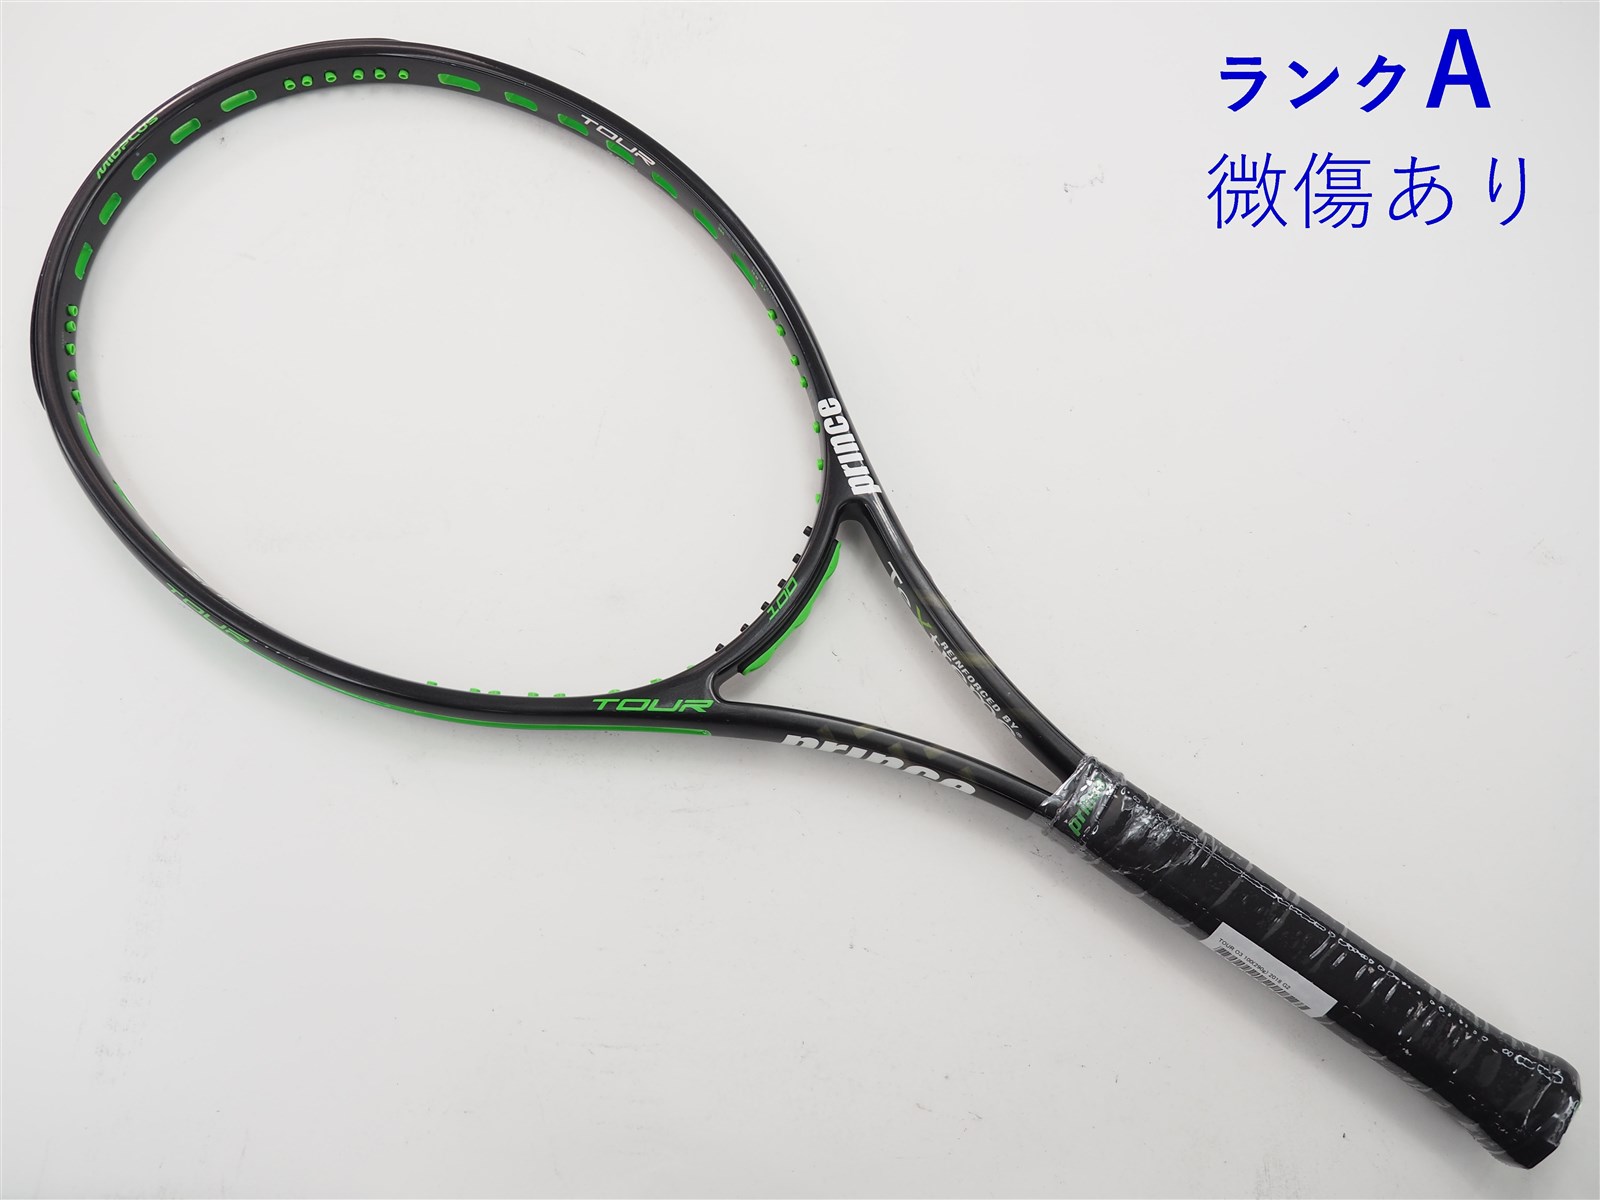 テニスラケット プリンス ツアー オースリー 100(290g) 2018年モデル